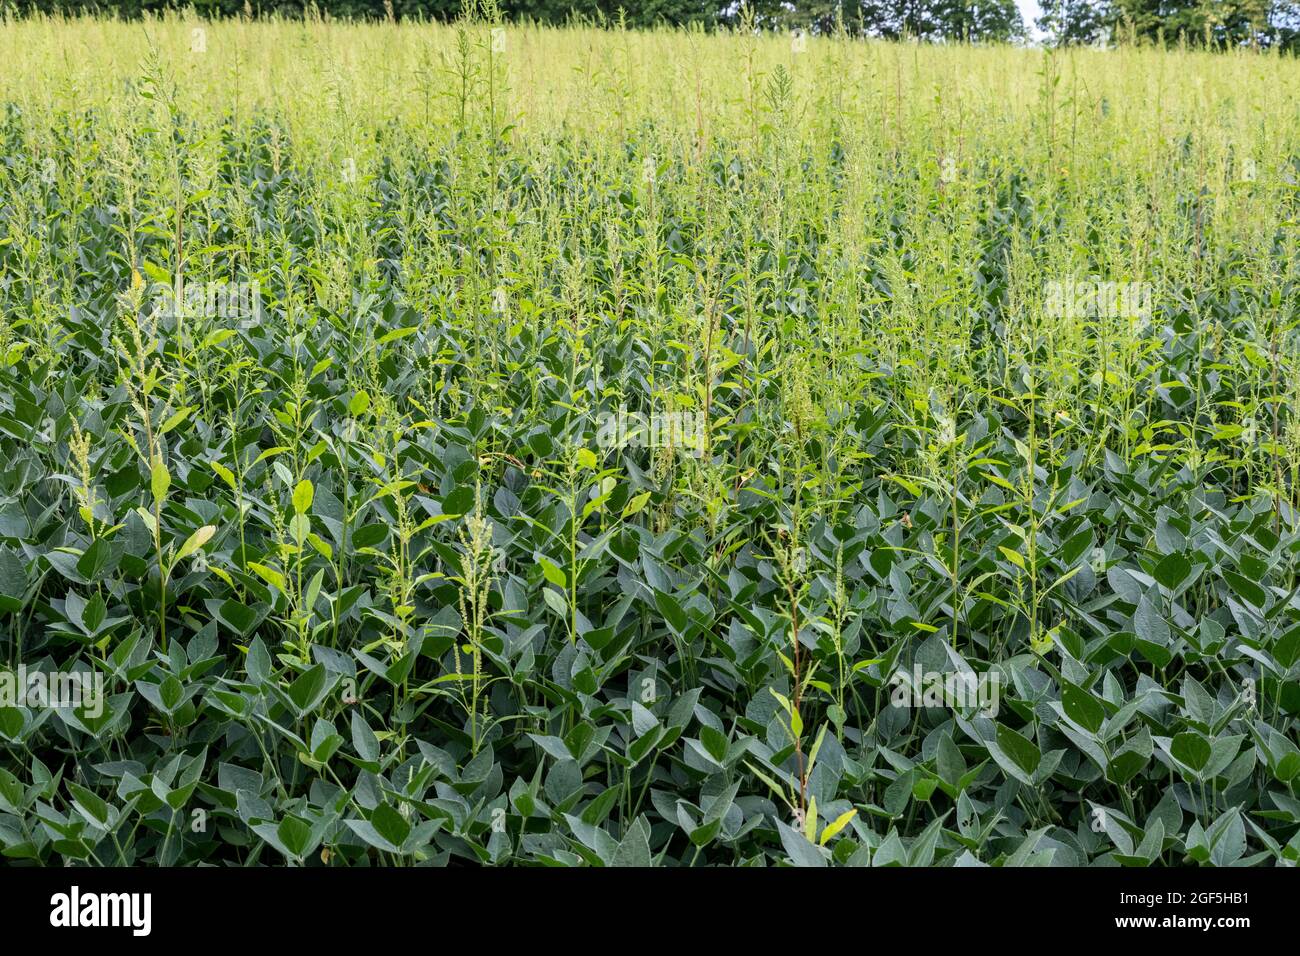 Three Oaks, Michigan - ein herbizidresistentes Unkraut, Palmer Amaranth, das in einem Feld von Sojabohnen wächst. Das Unkraut hat Resistenz gegen die meisten Pow entwickelt Stockfoto